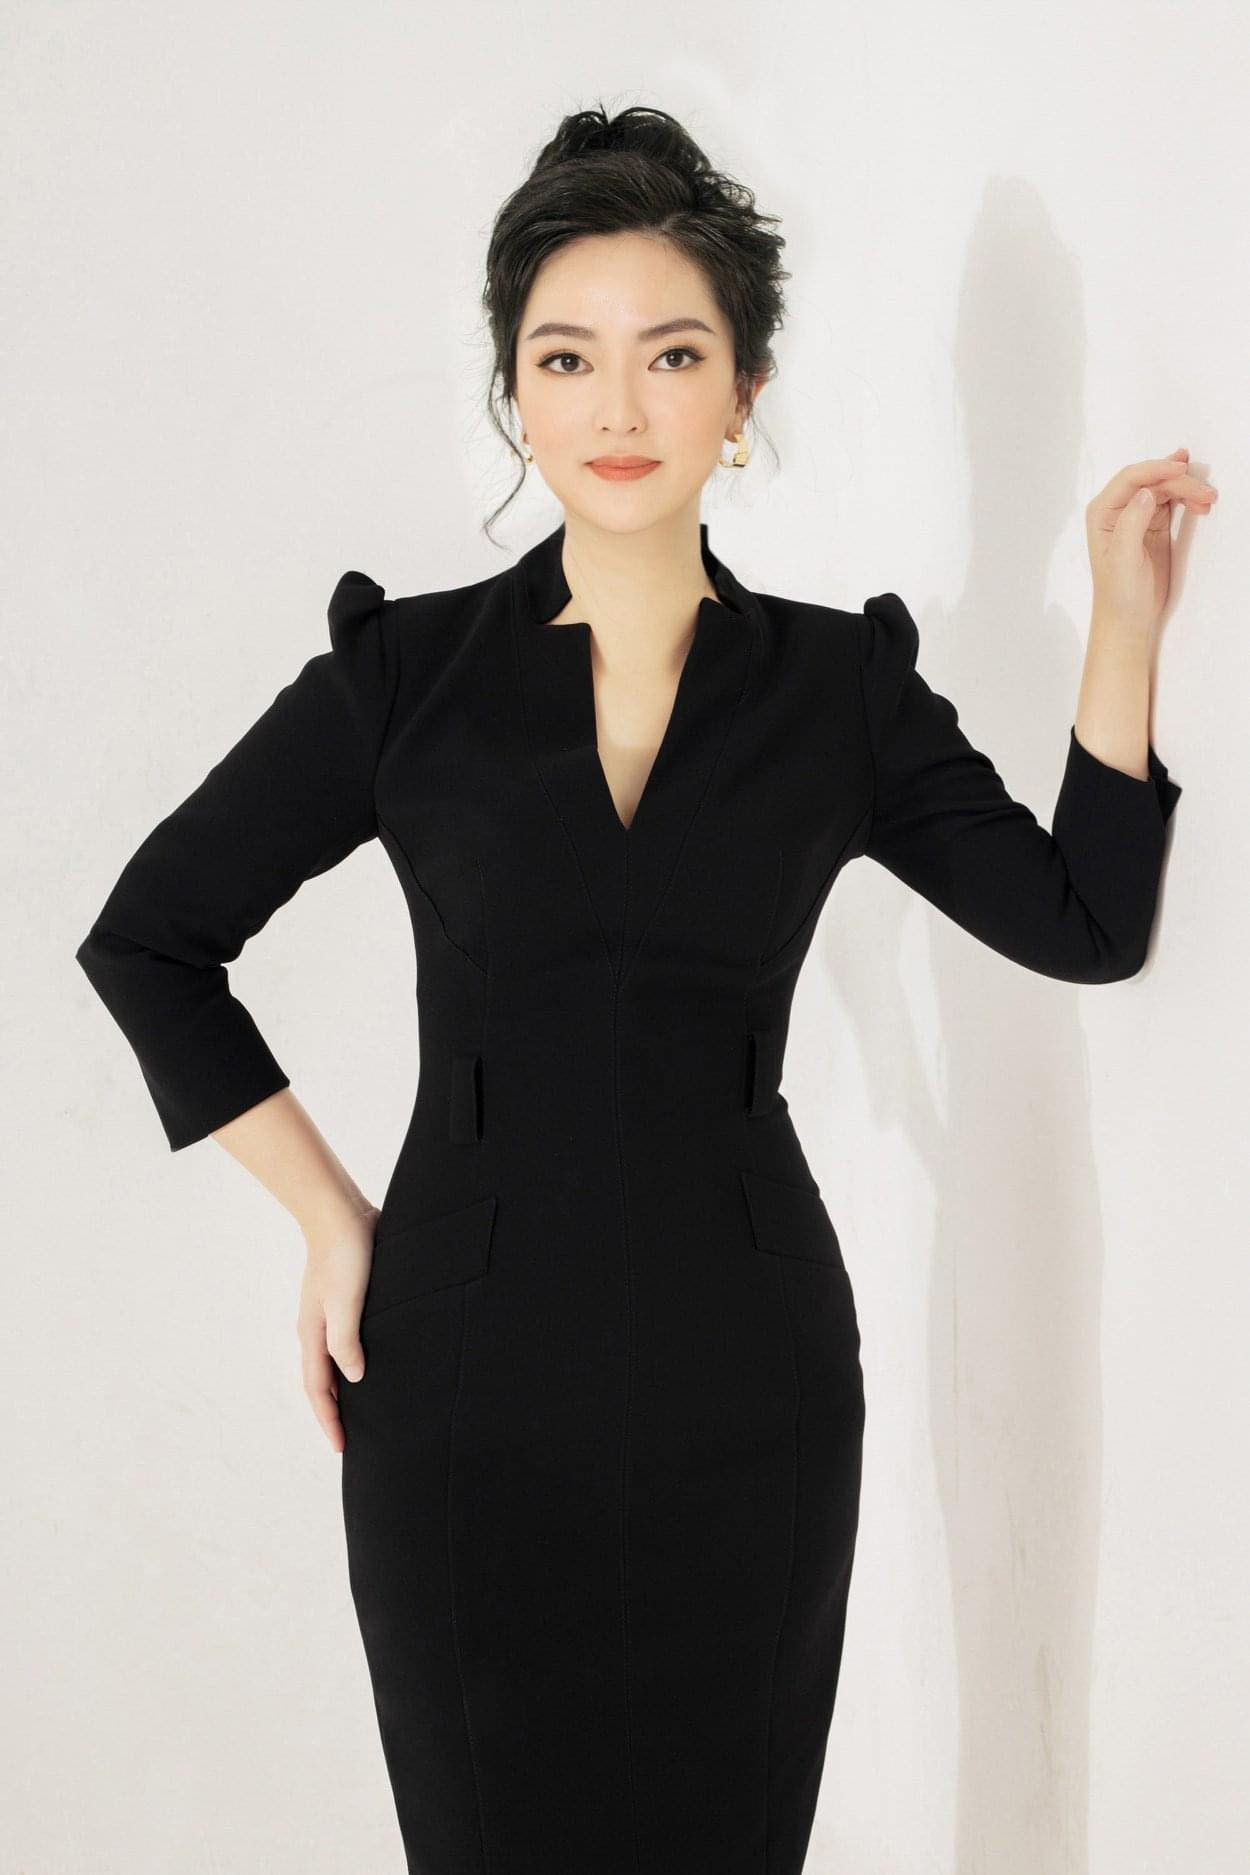 Nữ doanh nhân trẻ Thái Thiên Hồng Đào: “Thời gian là thứ duy nhất không chờ đợi ai”